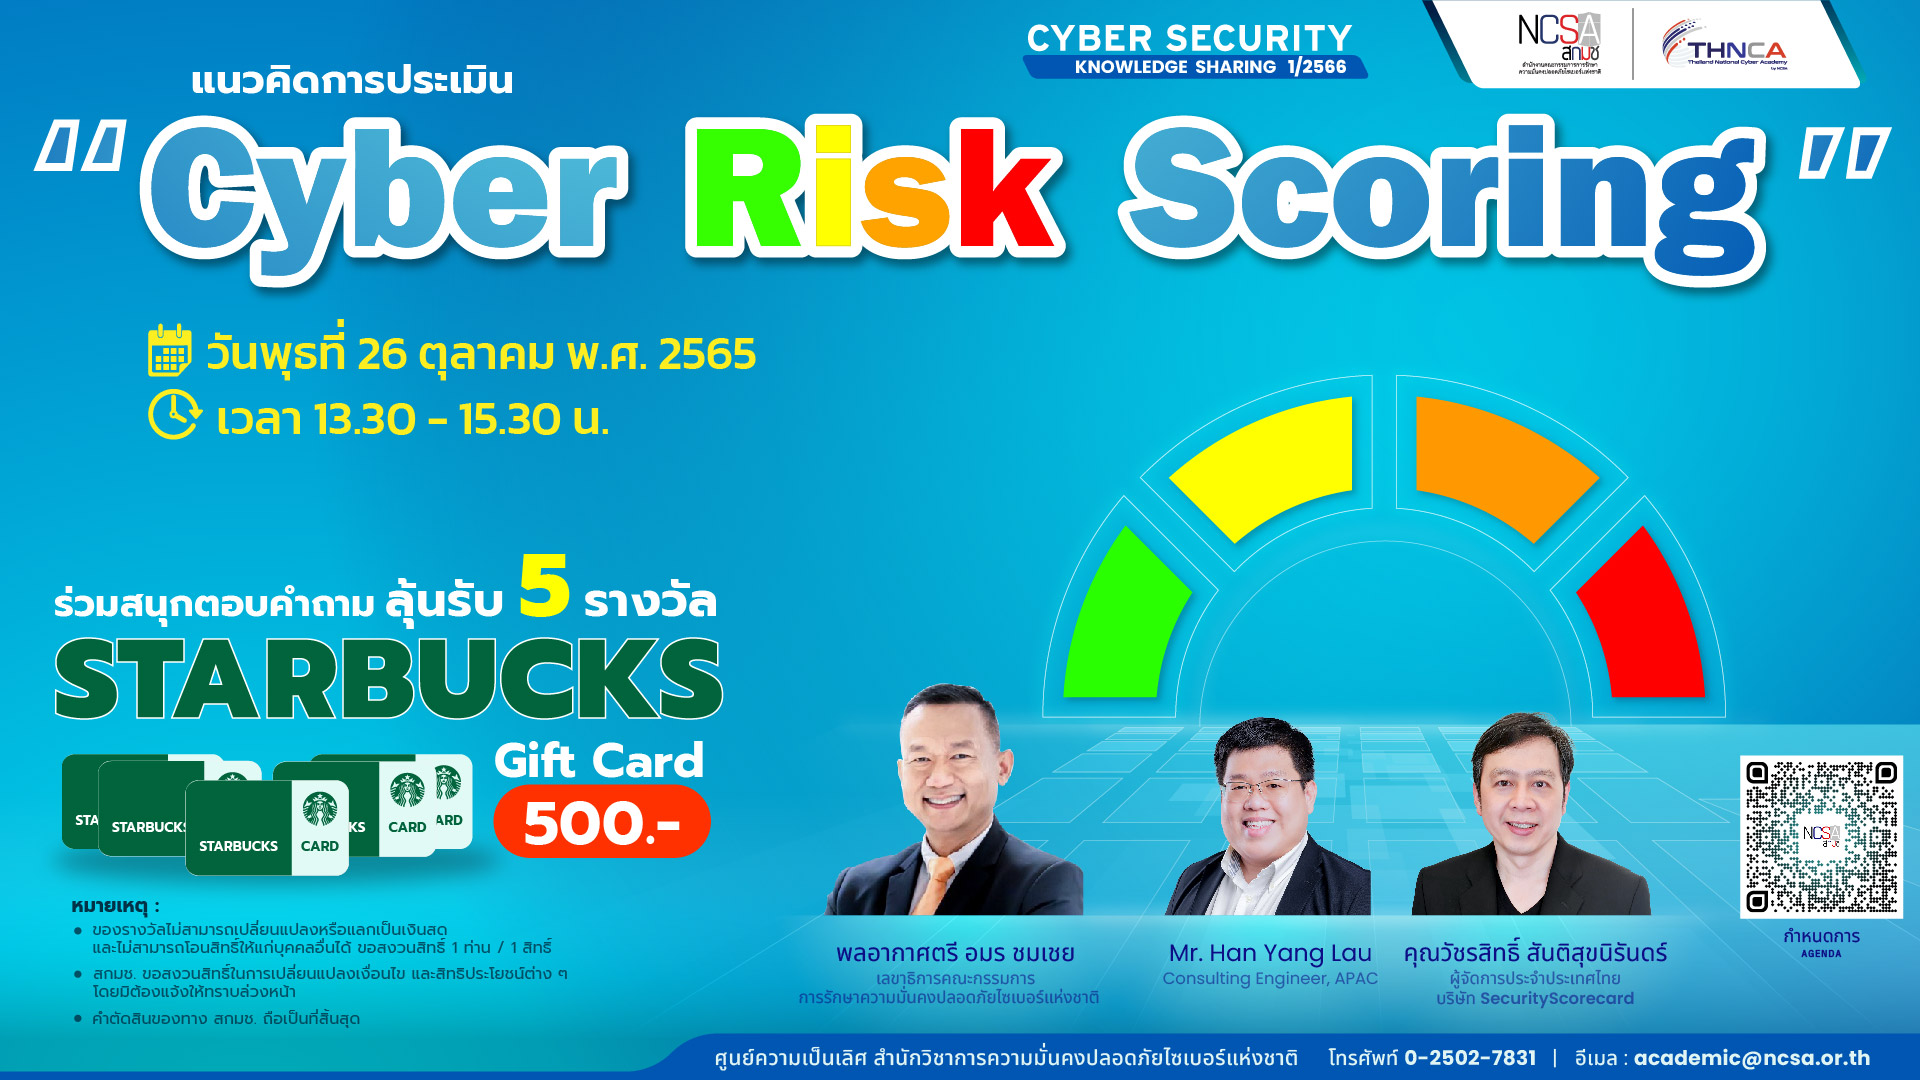 แนวคิดการประเมิน Cyber Risk Scoring